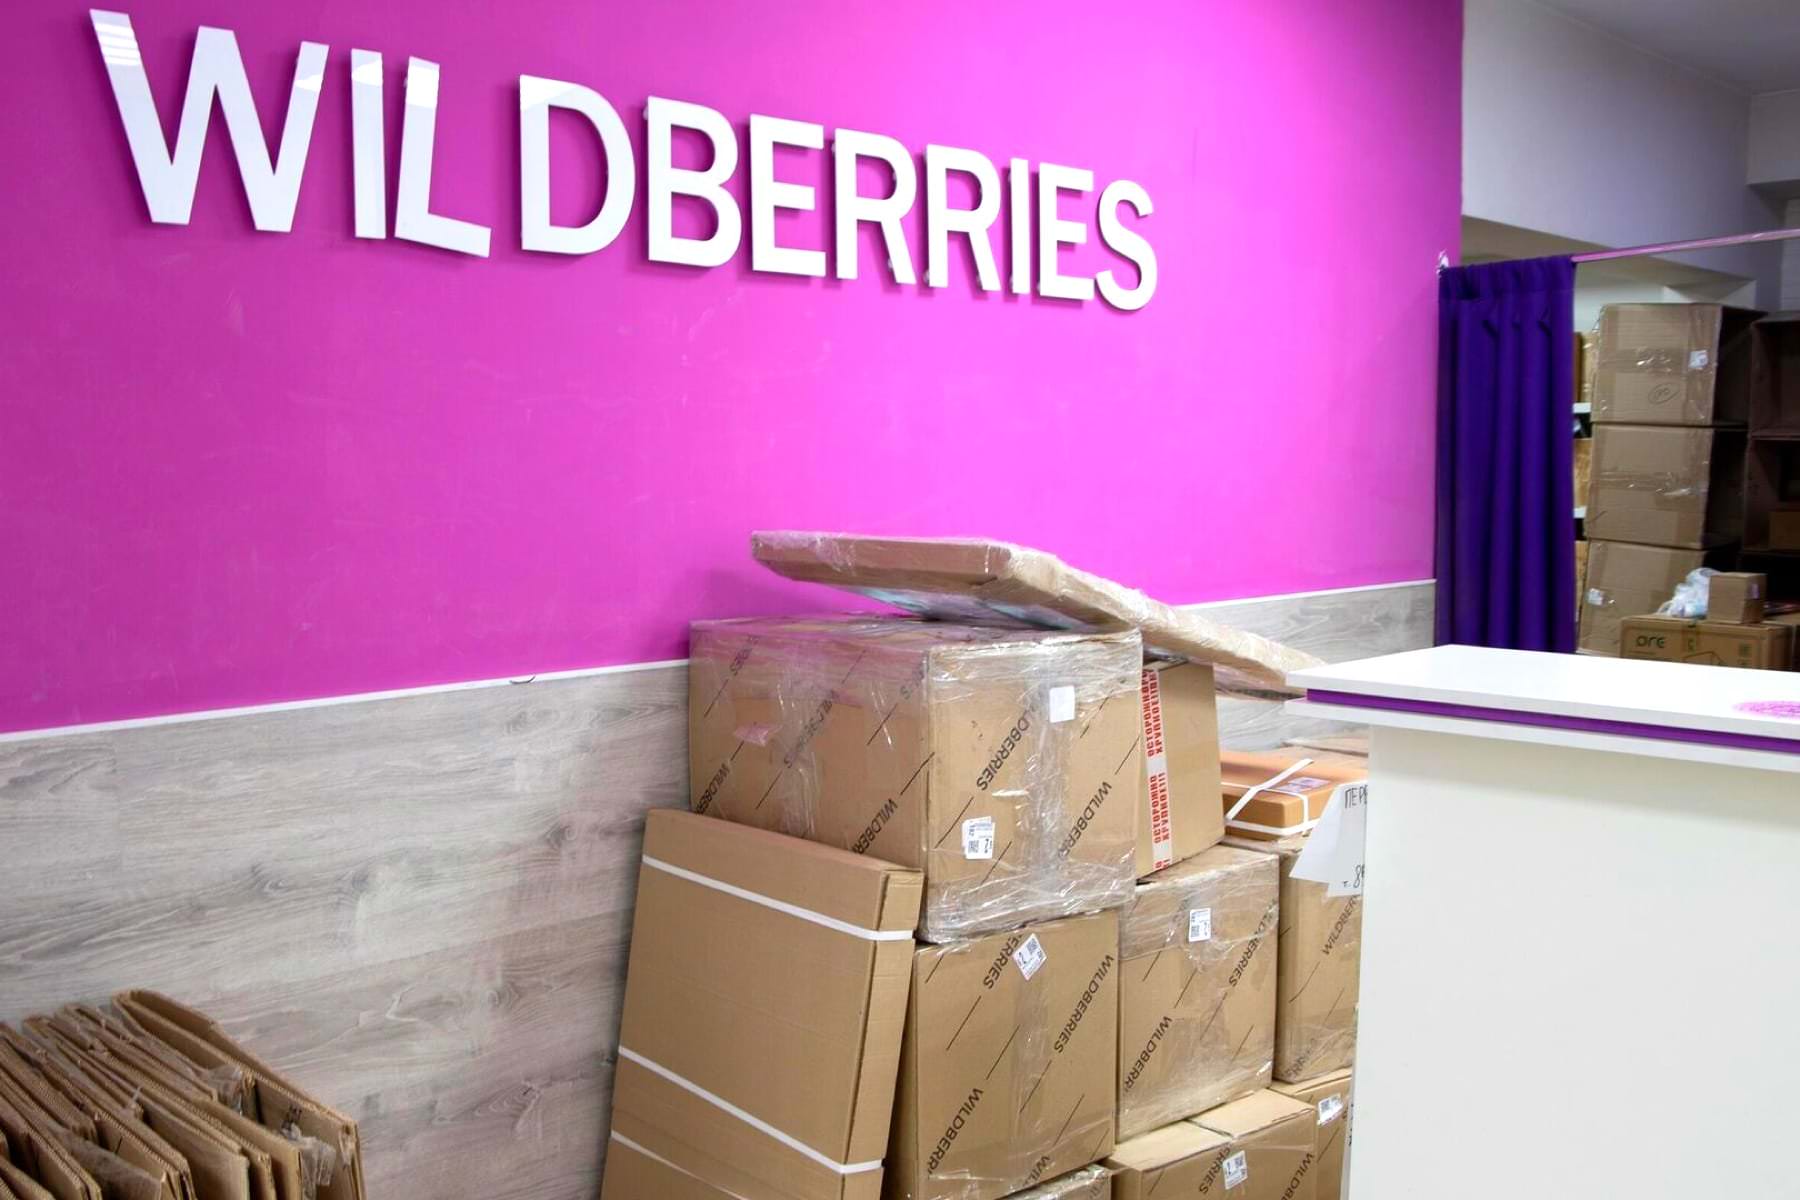 Wildberries массово загоняет покупателей в долги